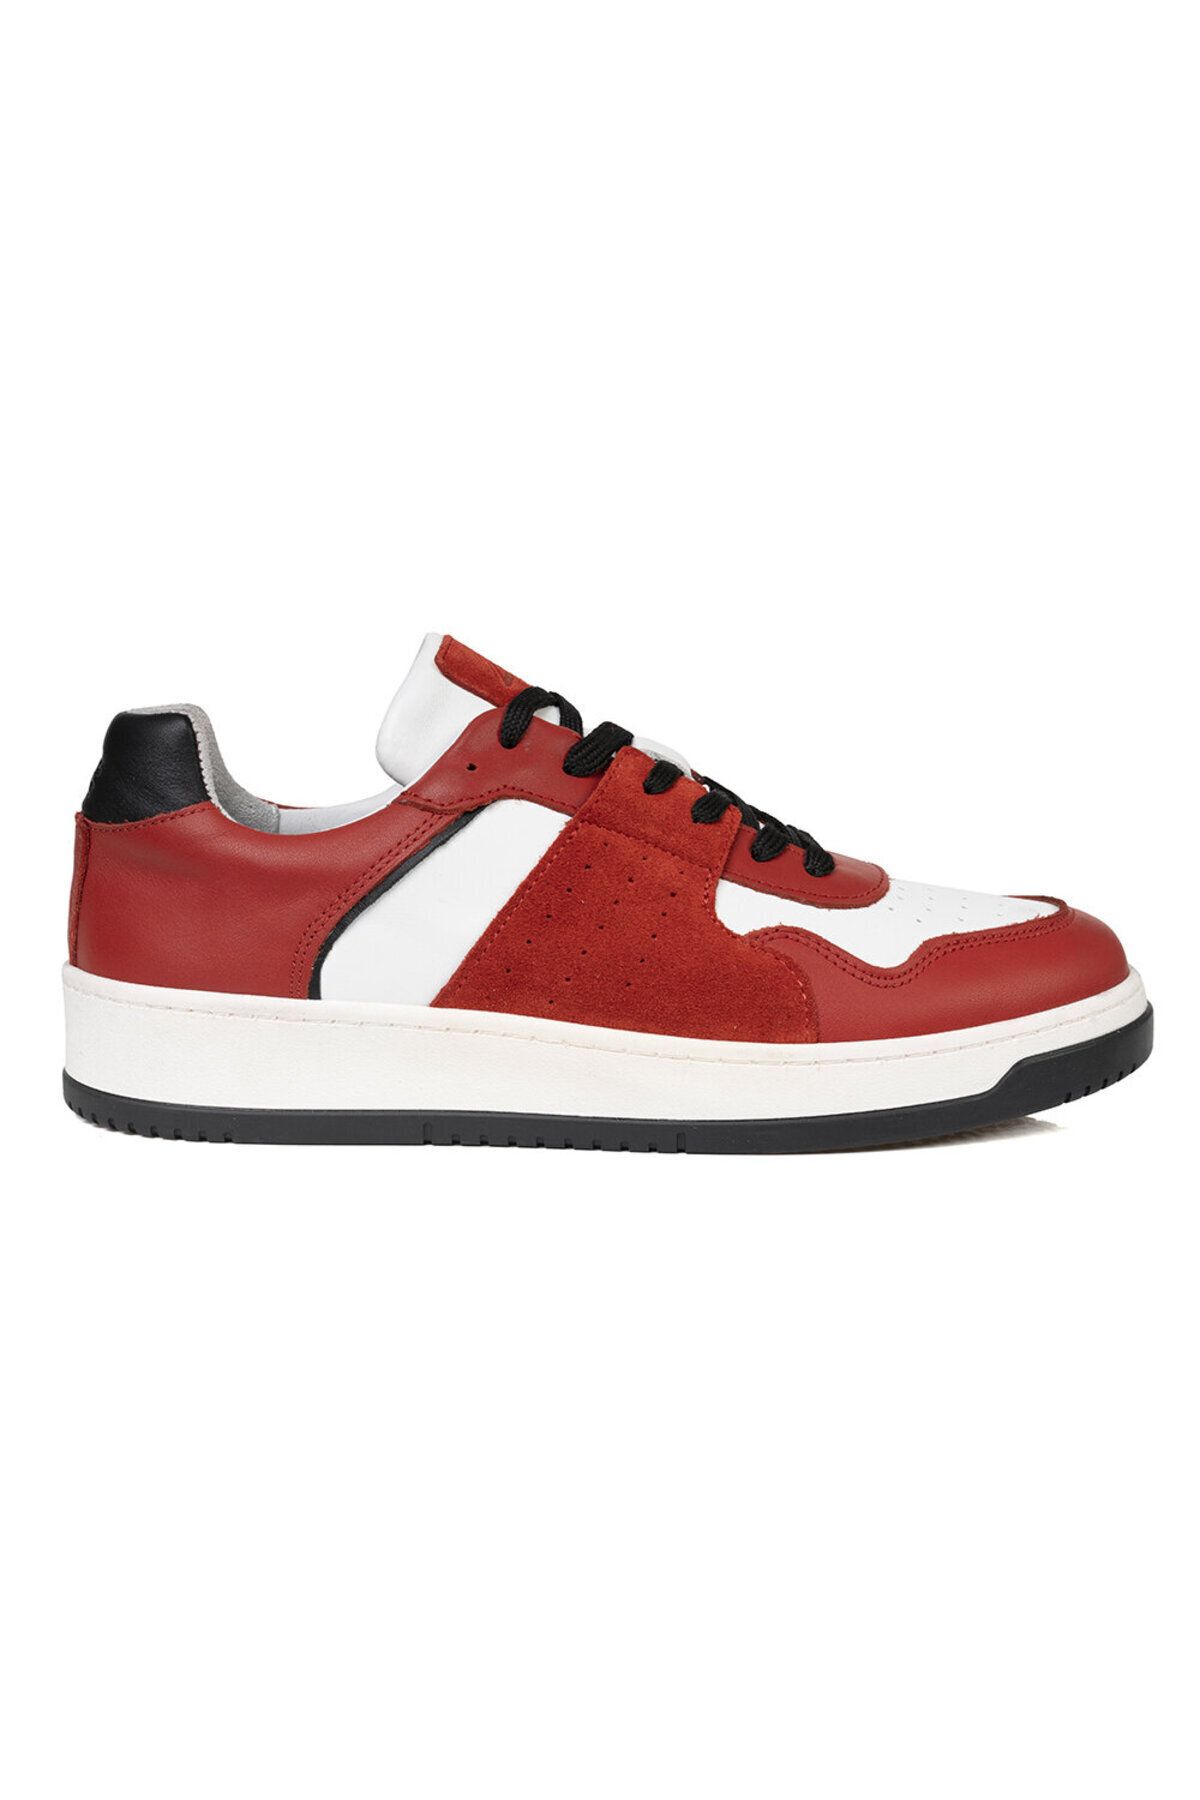 Greyder Erkek Kırmızı Beyaz Hakiki Deri Sneaker Ayakkabı 3k1sa75174